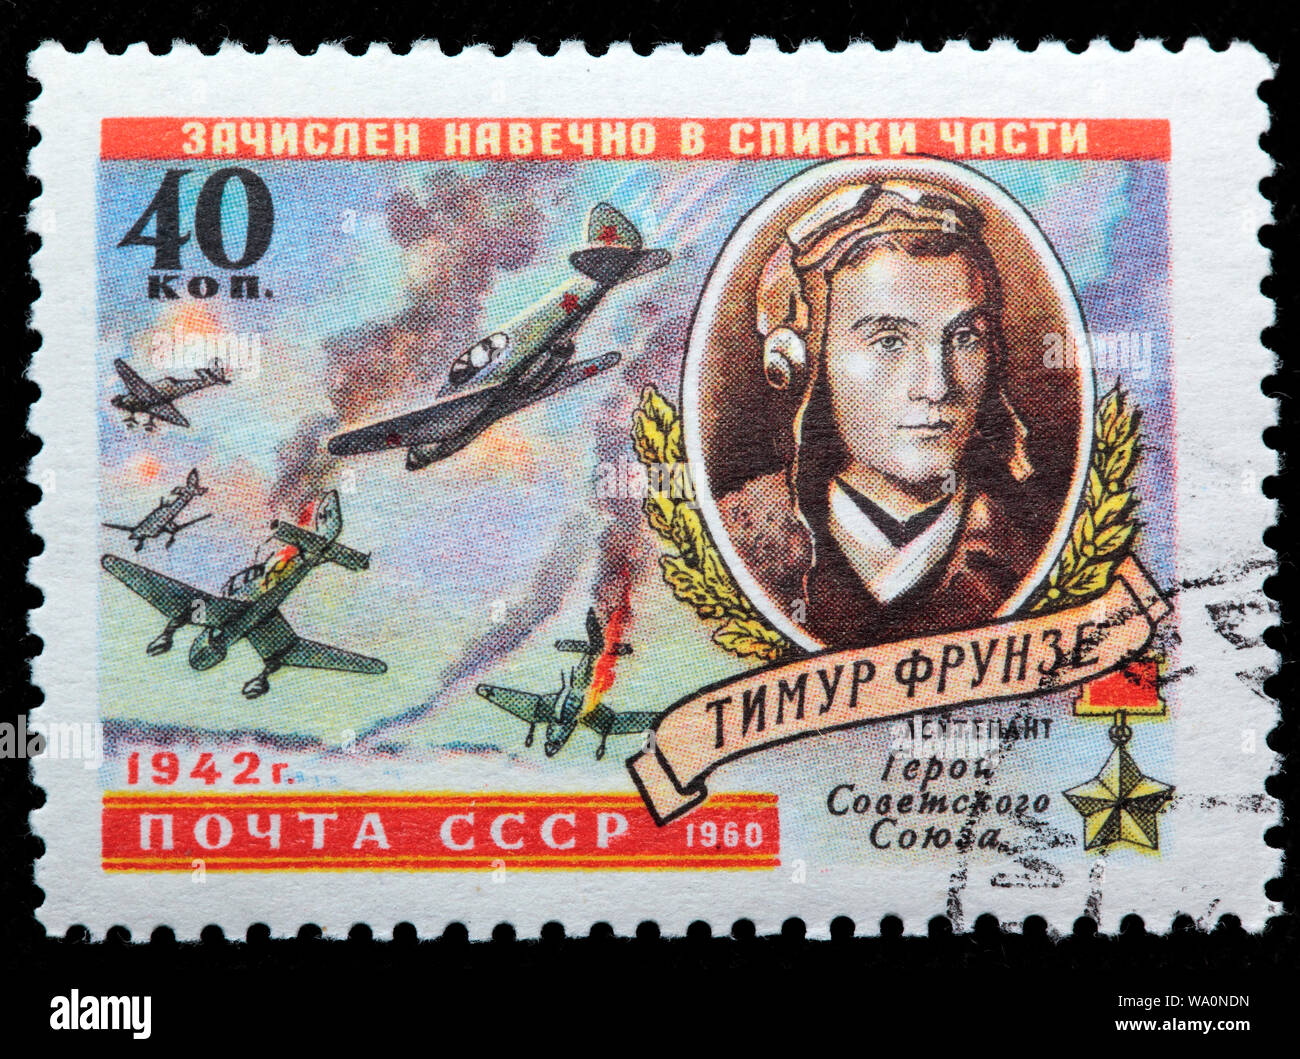 Timur Frunze (1923-1942), héros de l'URSS, pilote de chasse, timbre-poste, Russie, URSS, 1960 Banque D'Images